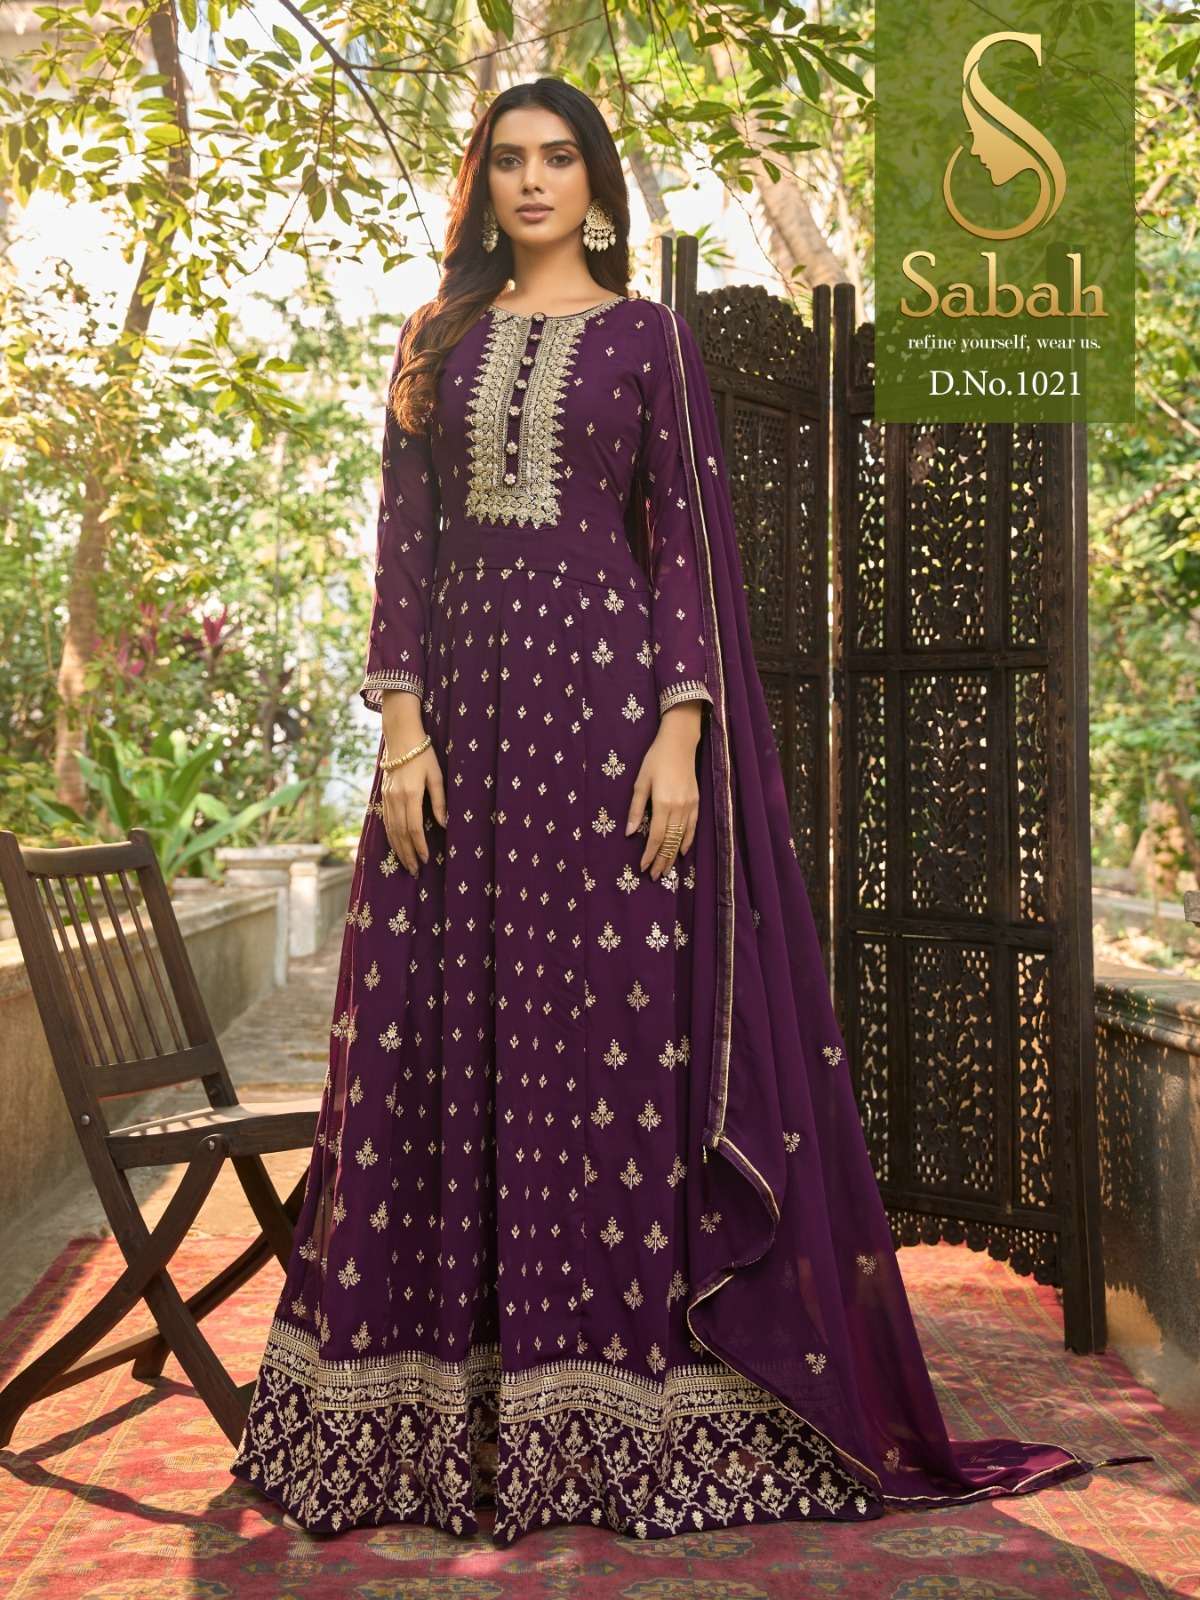 Fk Fashion Sabah Zaina 1021 Fancy Designer Suit Collection